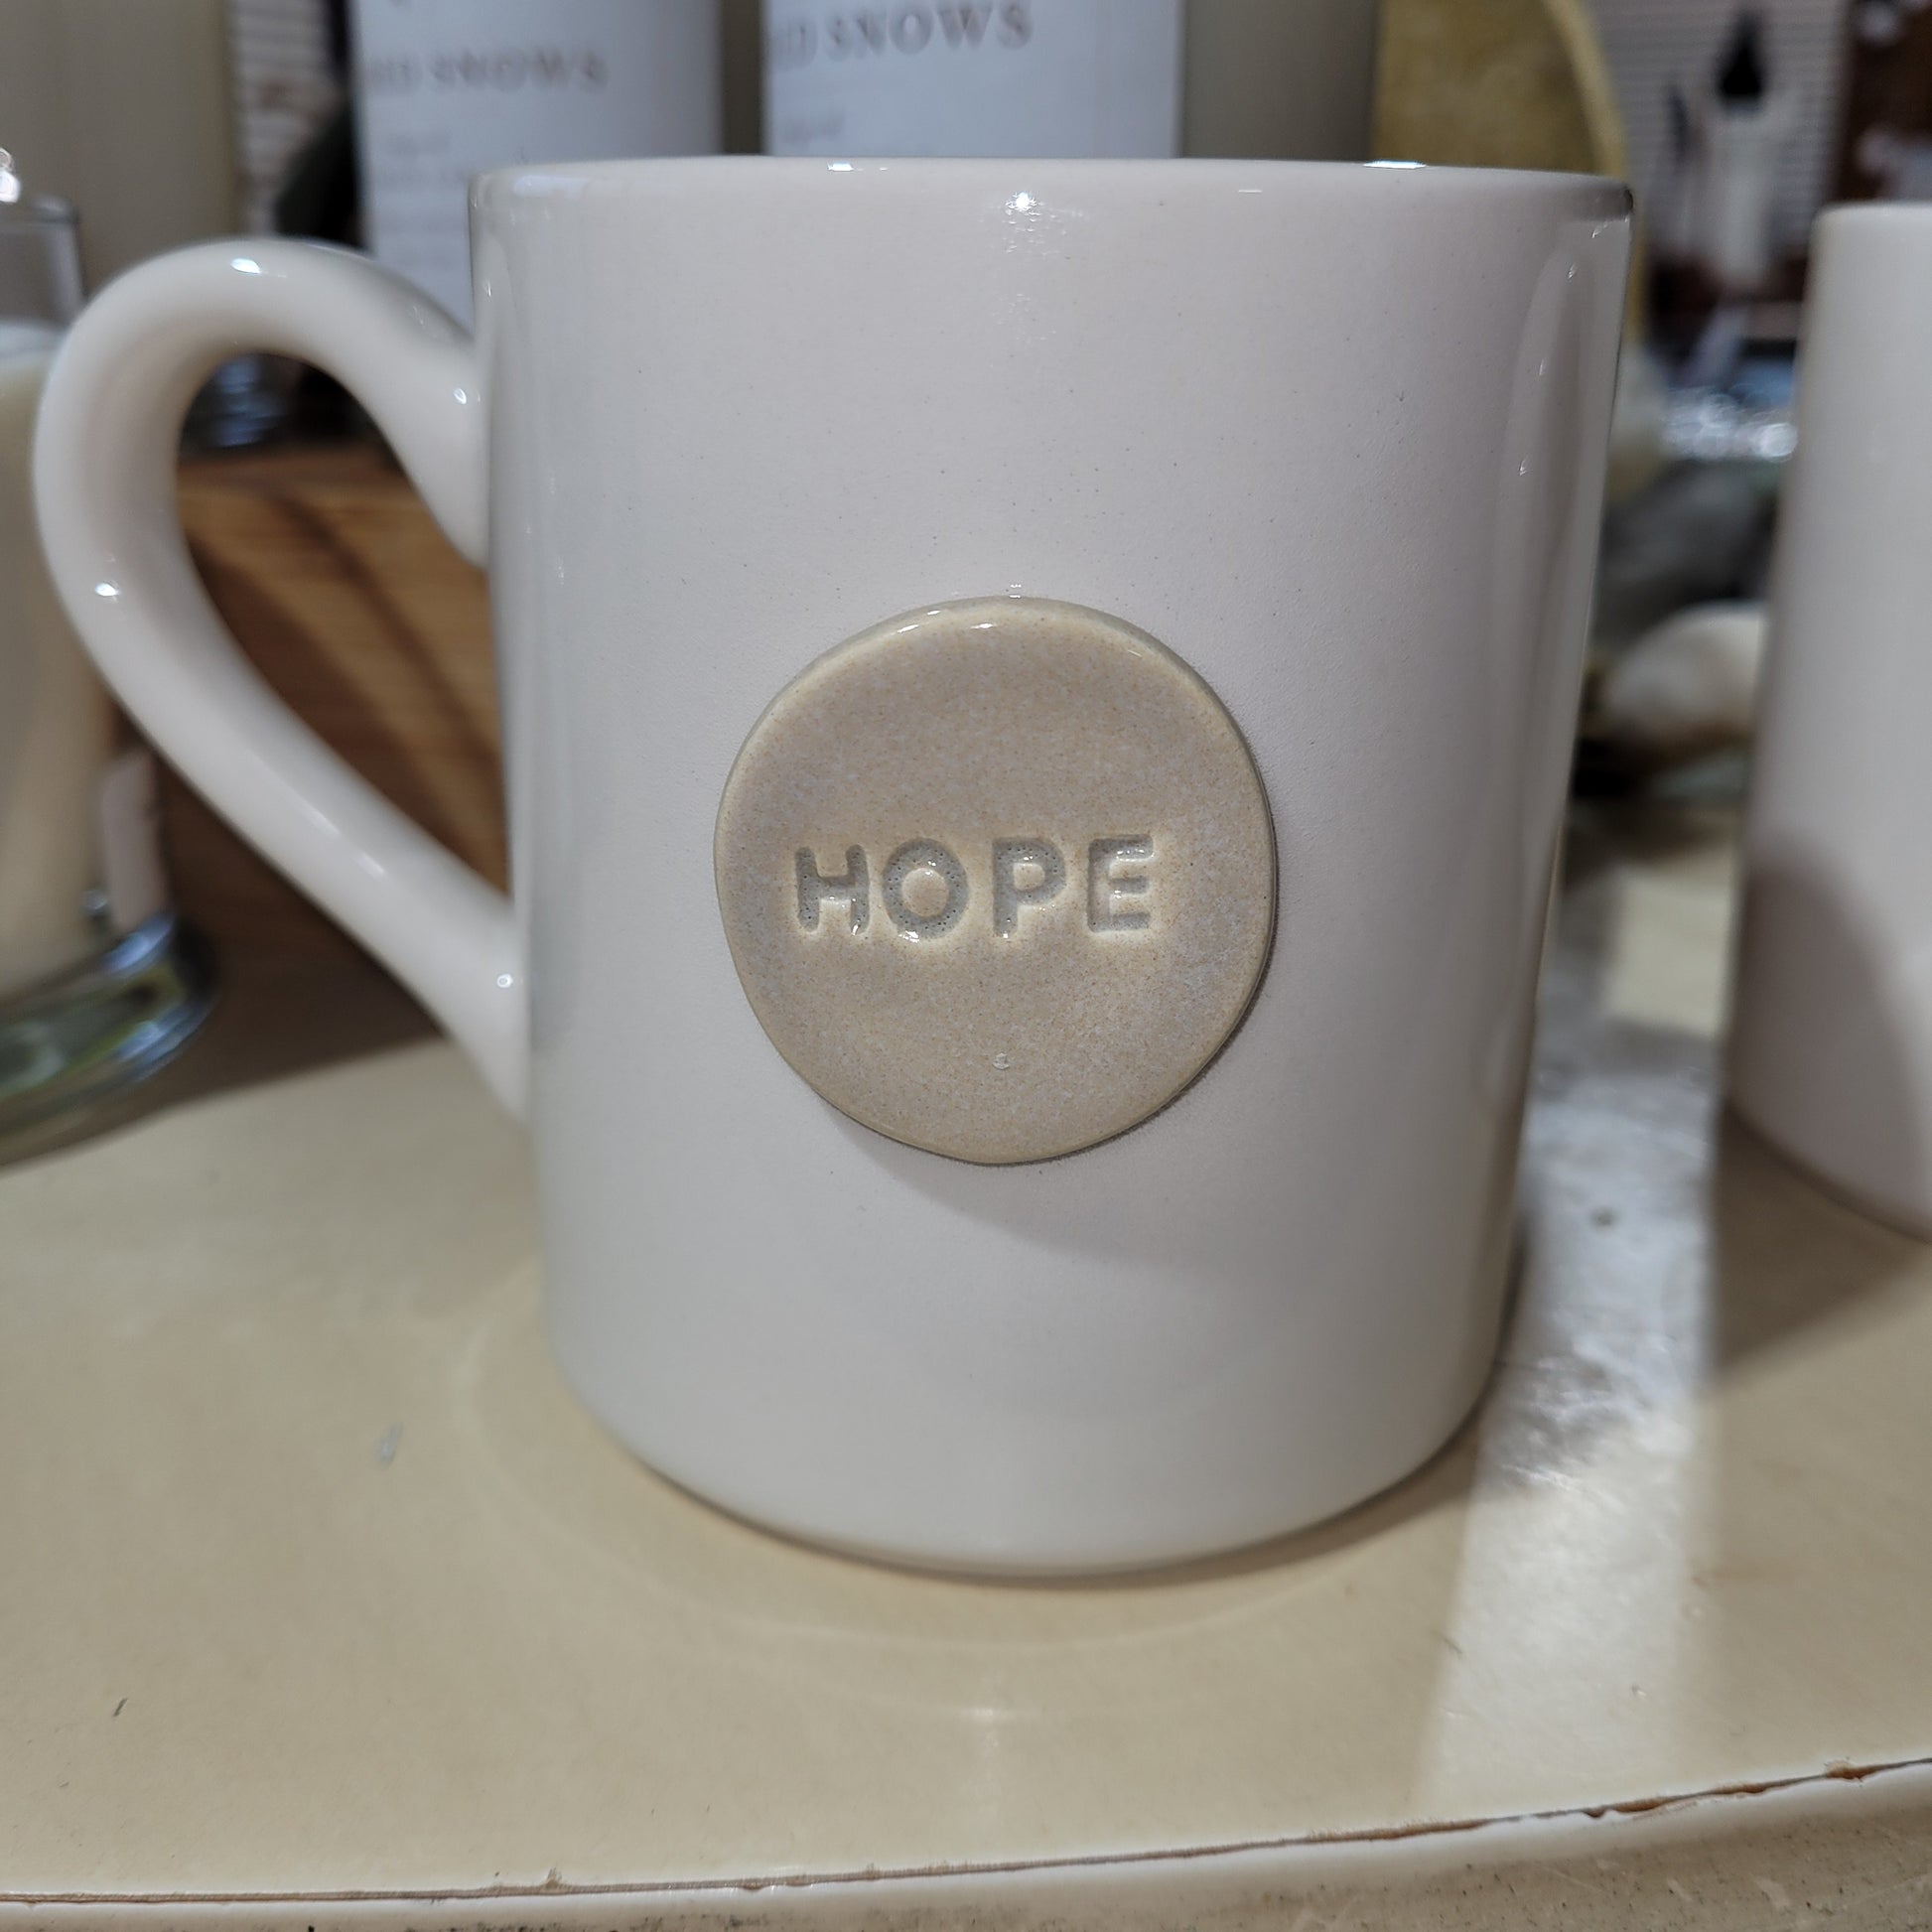 Stoneware Hope and Joy Mugs